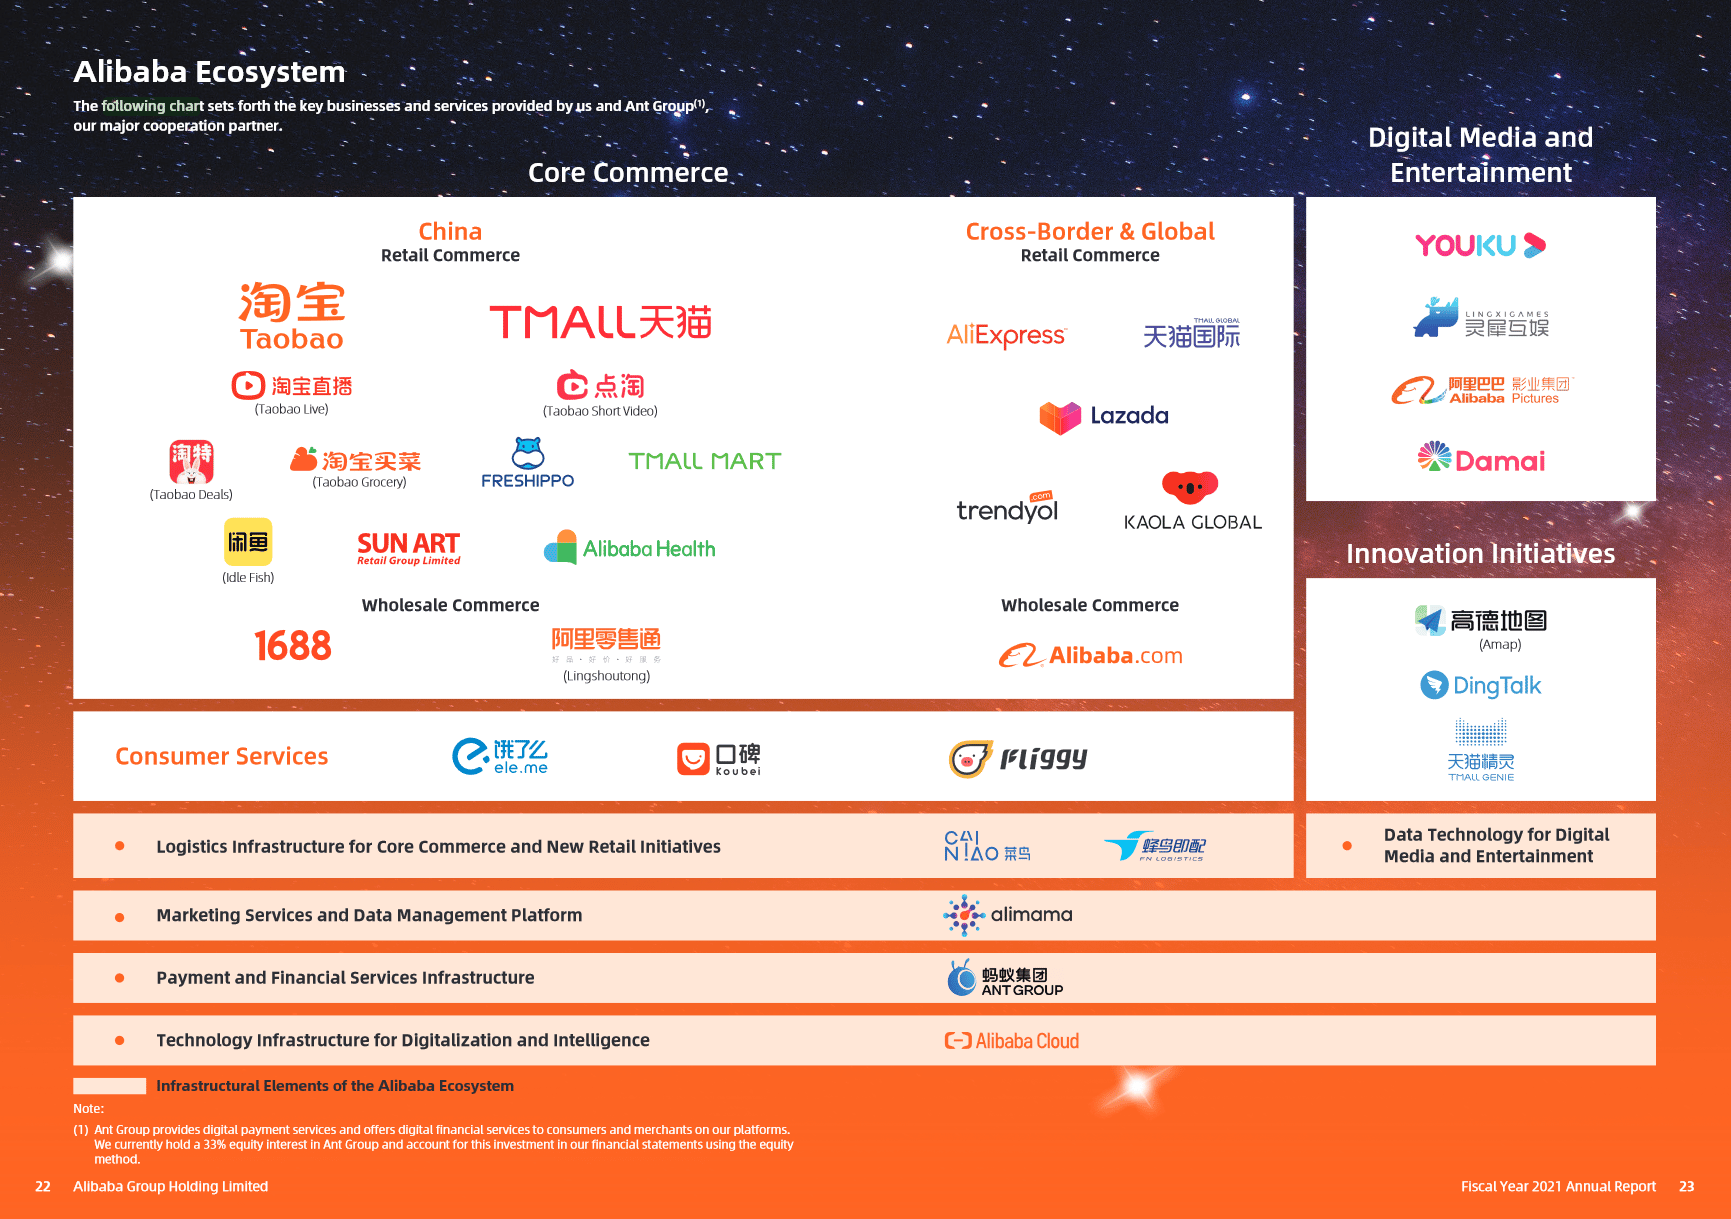 Grafik mit allen Teilnehmern des Alibaba Ökosystems.